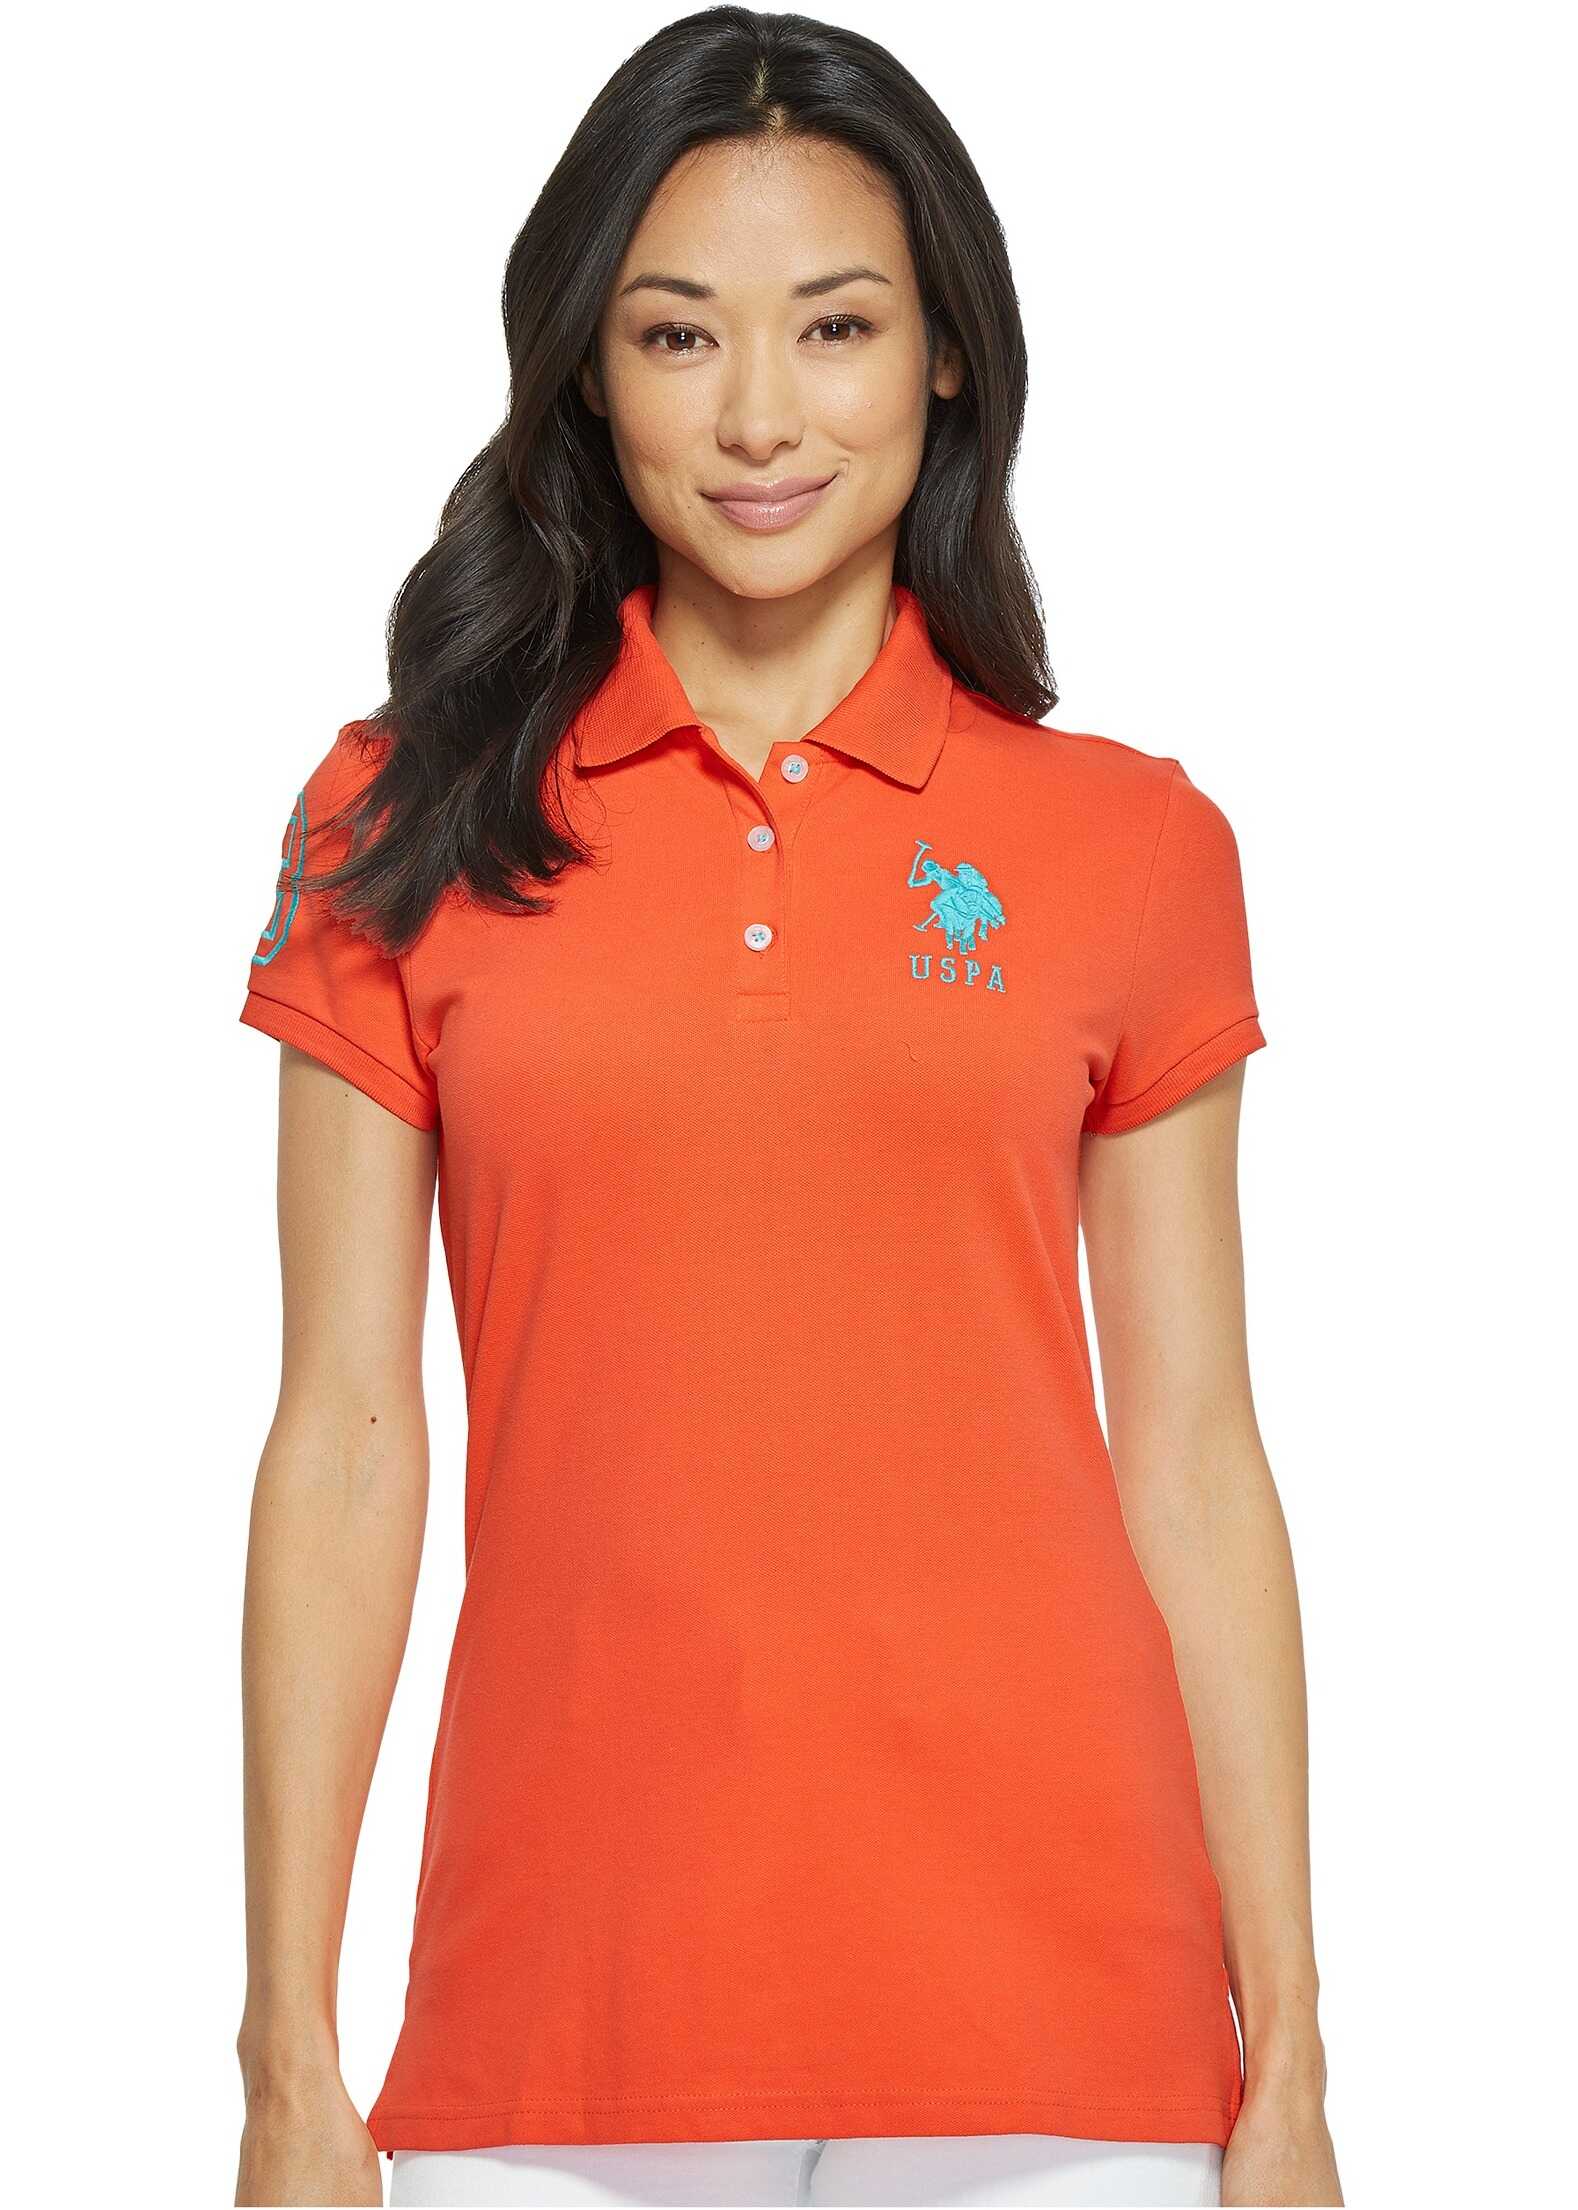 U.S. POLO ASSN. Neon Logos Short Sleeve Polo Shirt Hot Coral